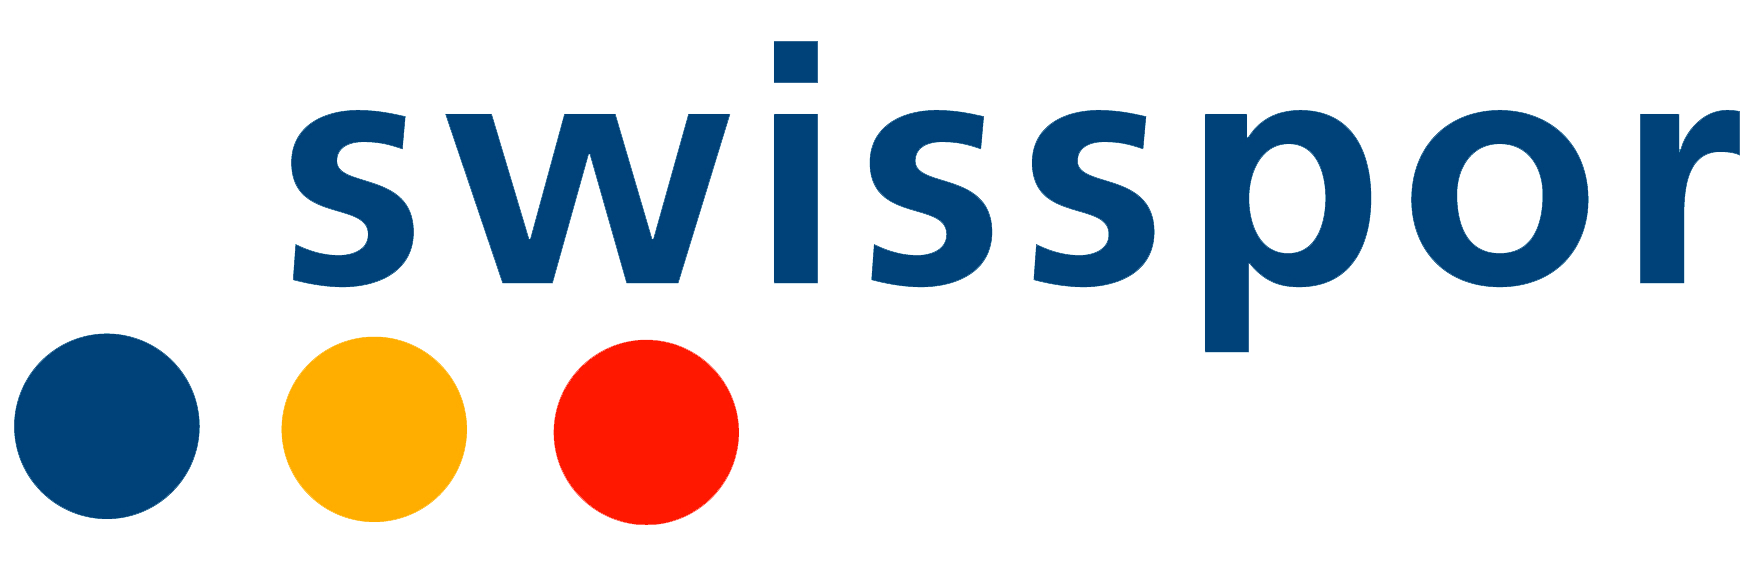 swisspor_logo.png